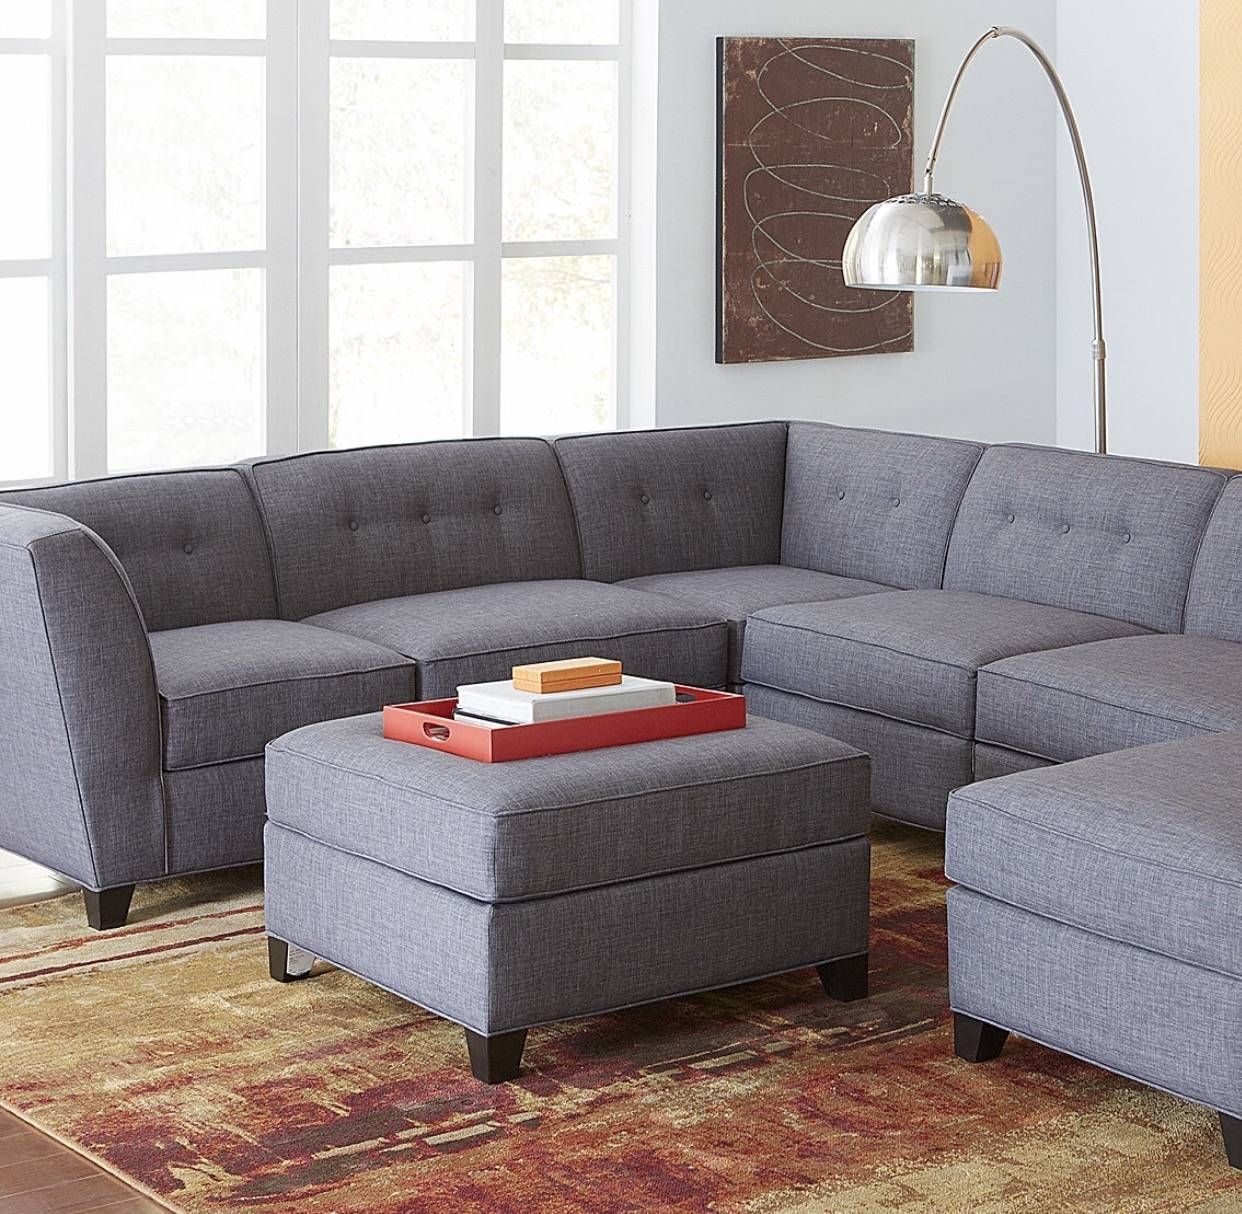 Elegant Red Custom Made Sofa | We Make Custom Size Sofas! Pertaining To Custom Made Sectional Sofas (View 23 of 30)